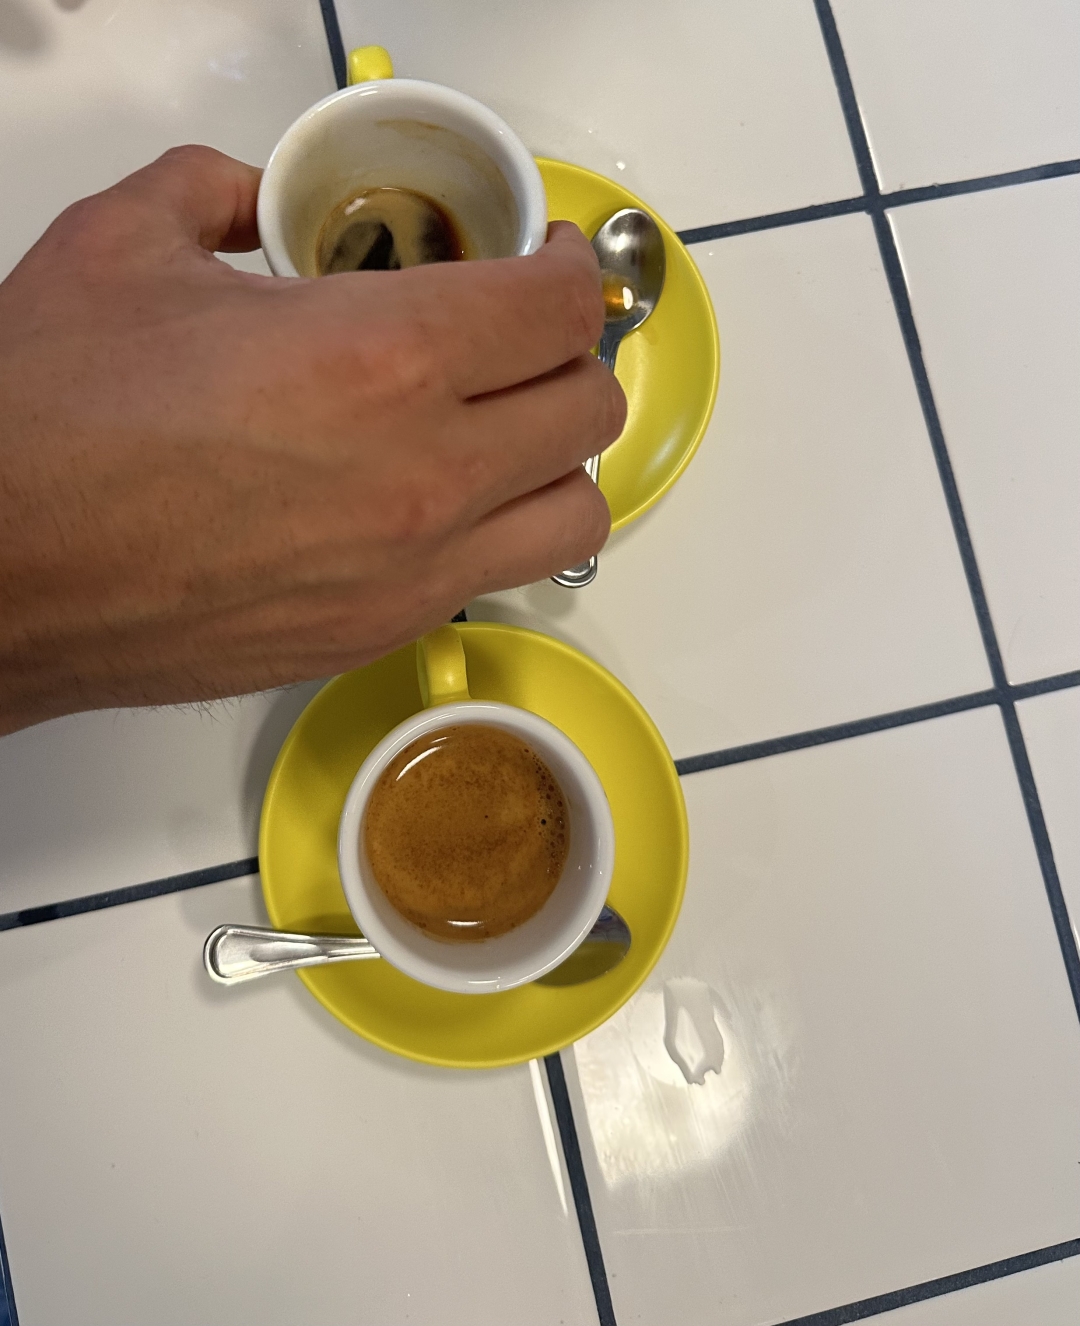 Đir po Crnoj Gori: Gdje popiti najbolju kavu u Herceg Novom?